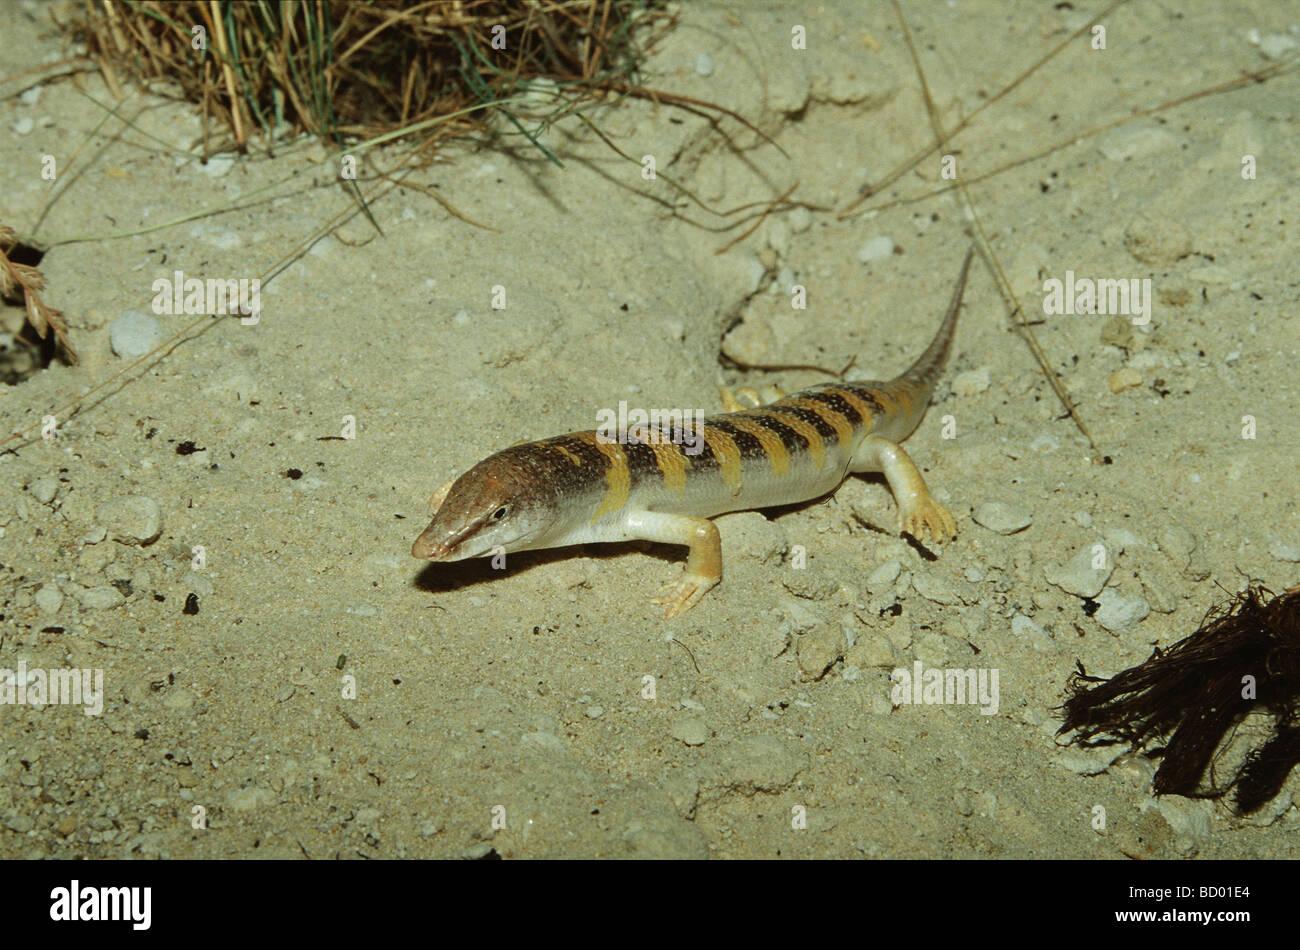 Common Skink / sandfish in sand / Scincus scincus Stock Photo